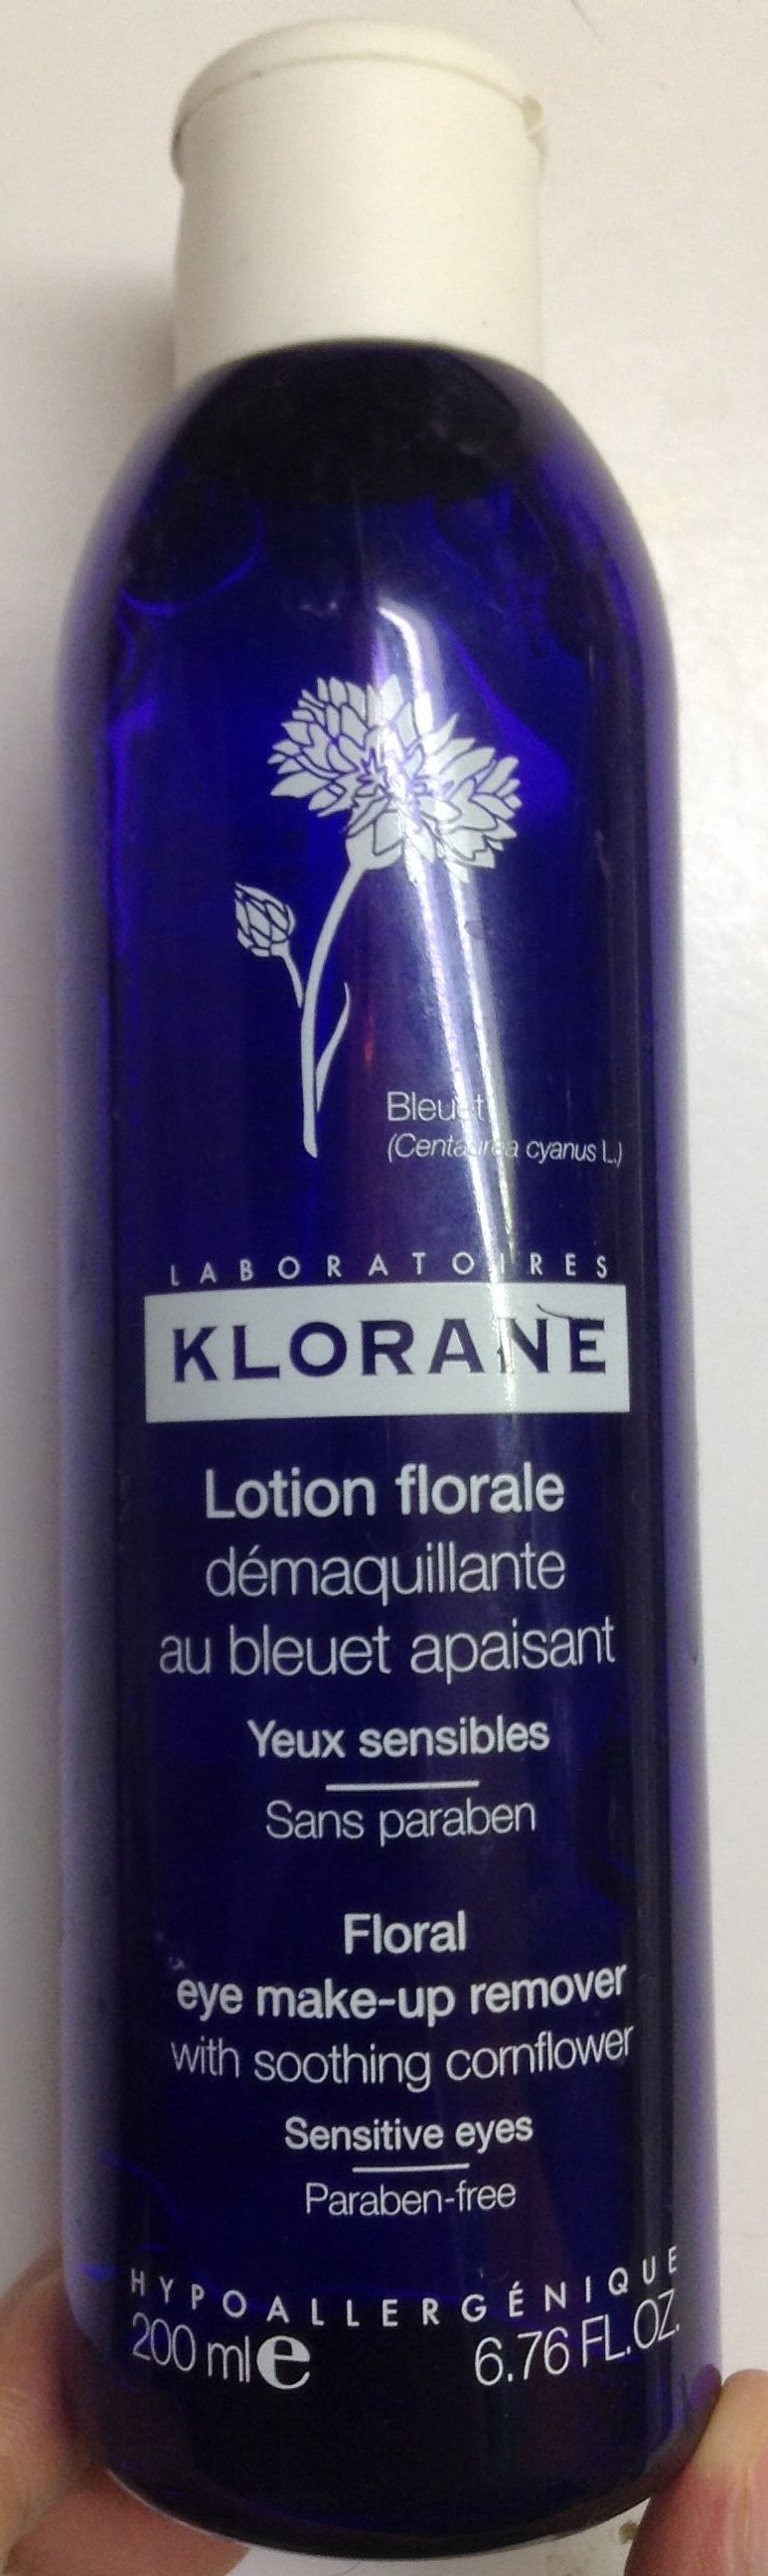 Lotion florale démaquillante - Produkt - fr